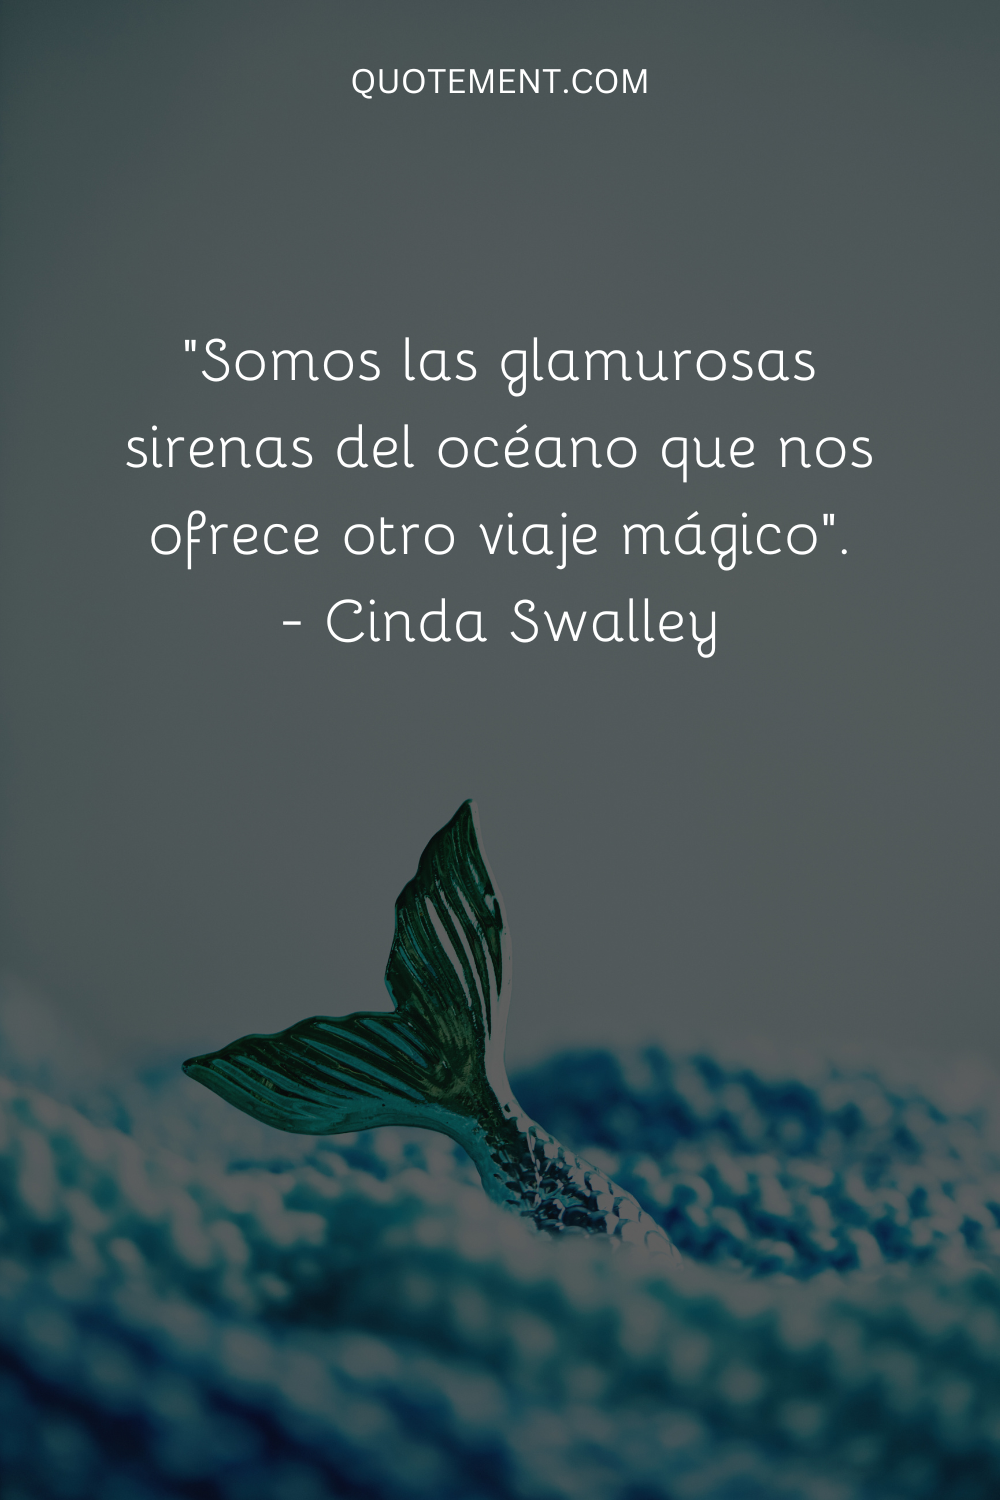 "Somos las glamurosas sirenas del océano que nos ofrece otro viaje mágico". - Cinda Swalley